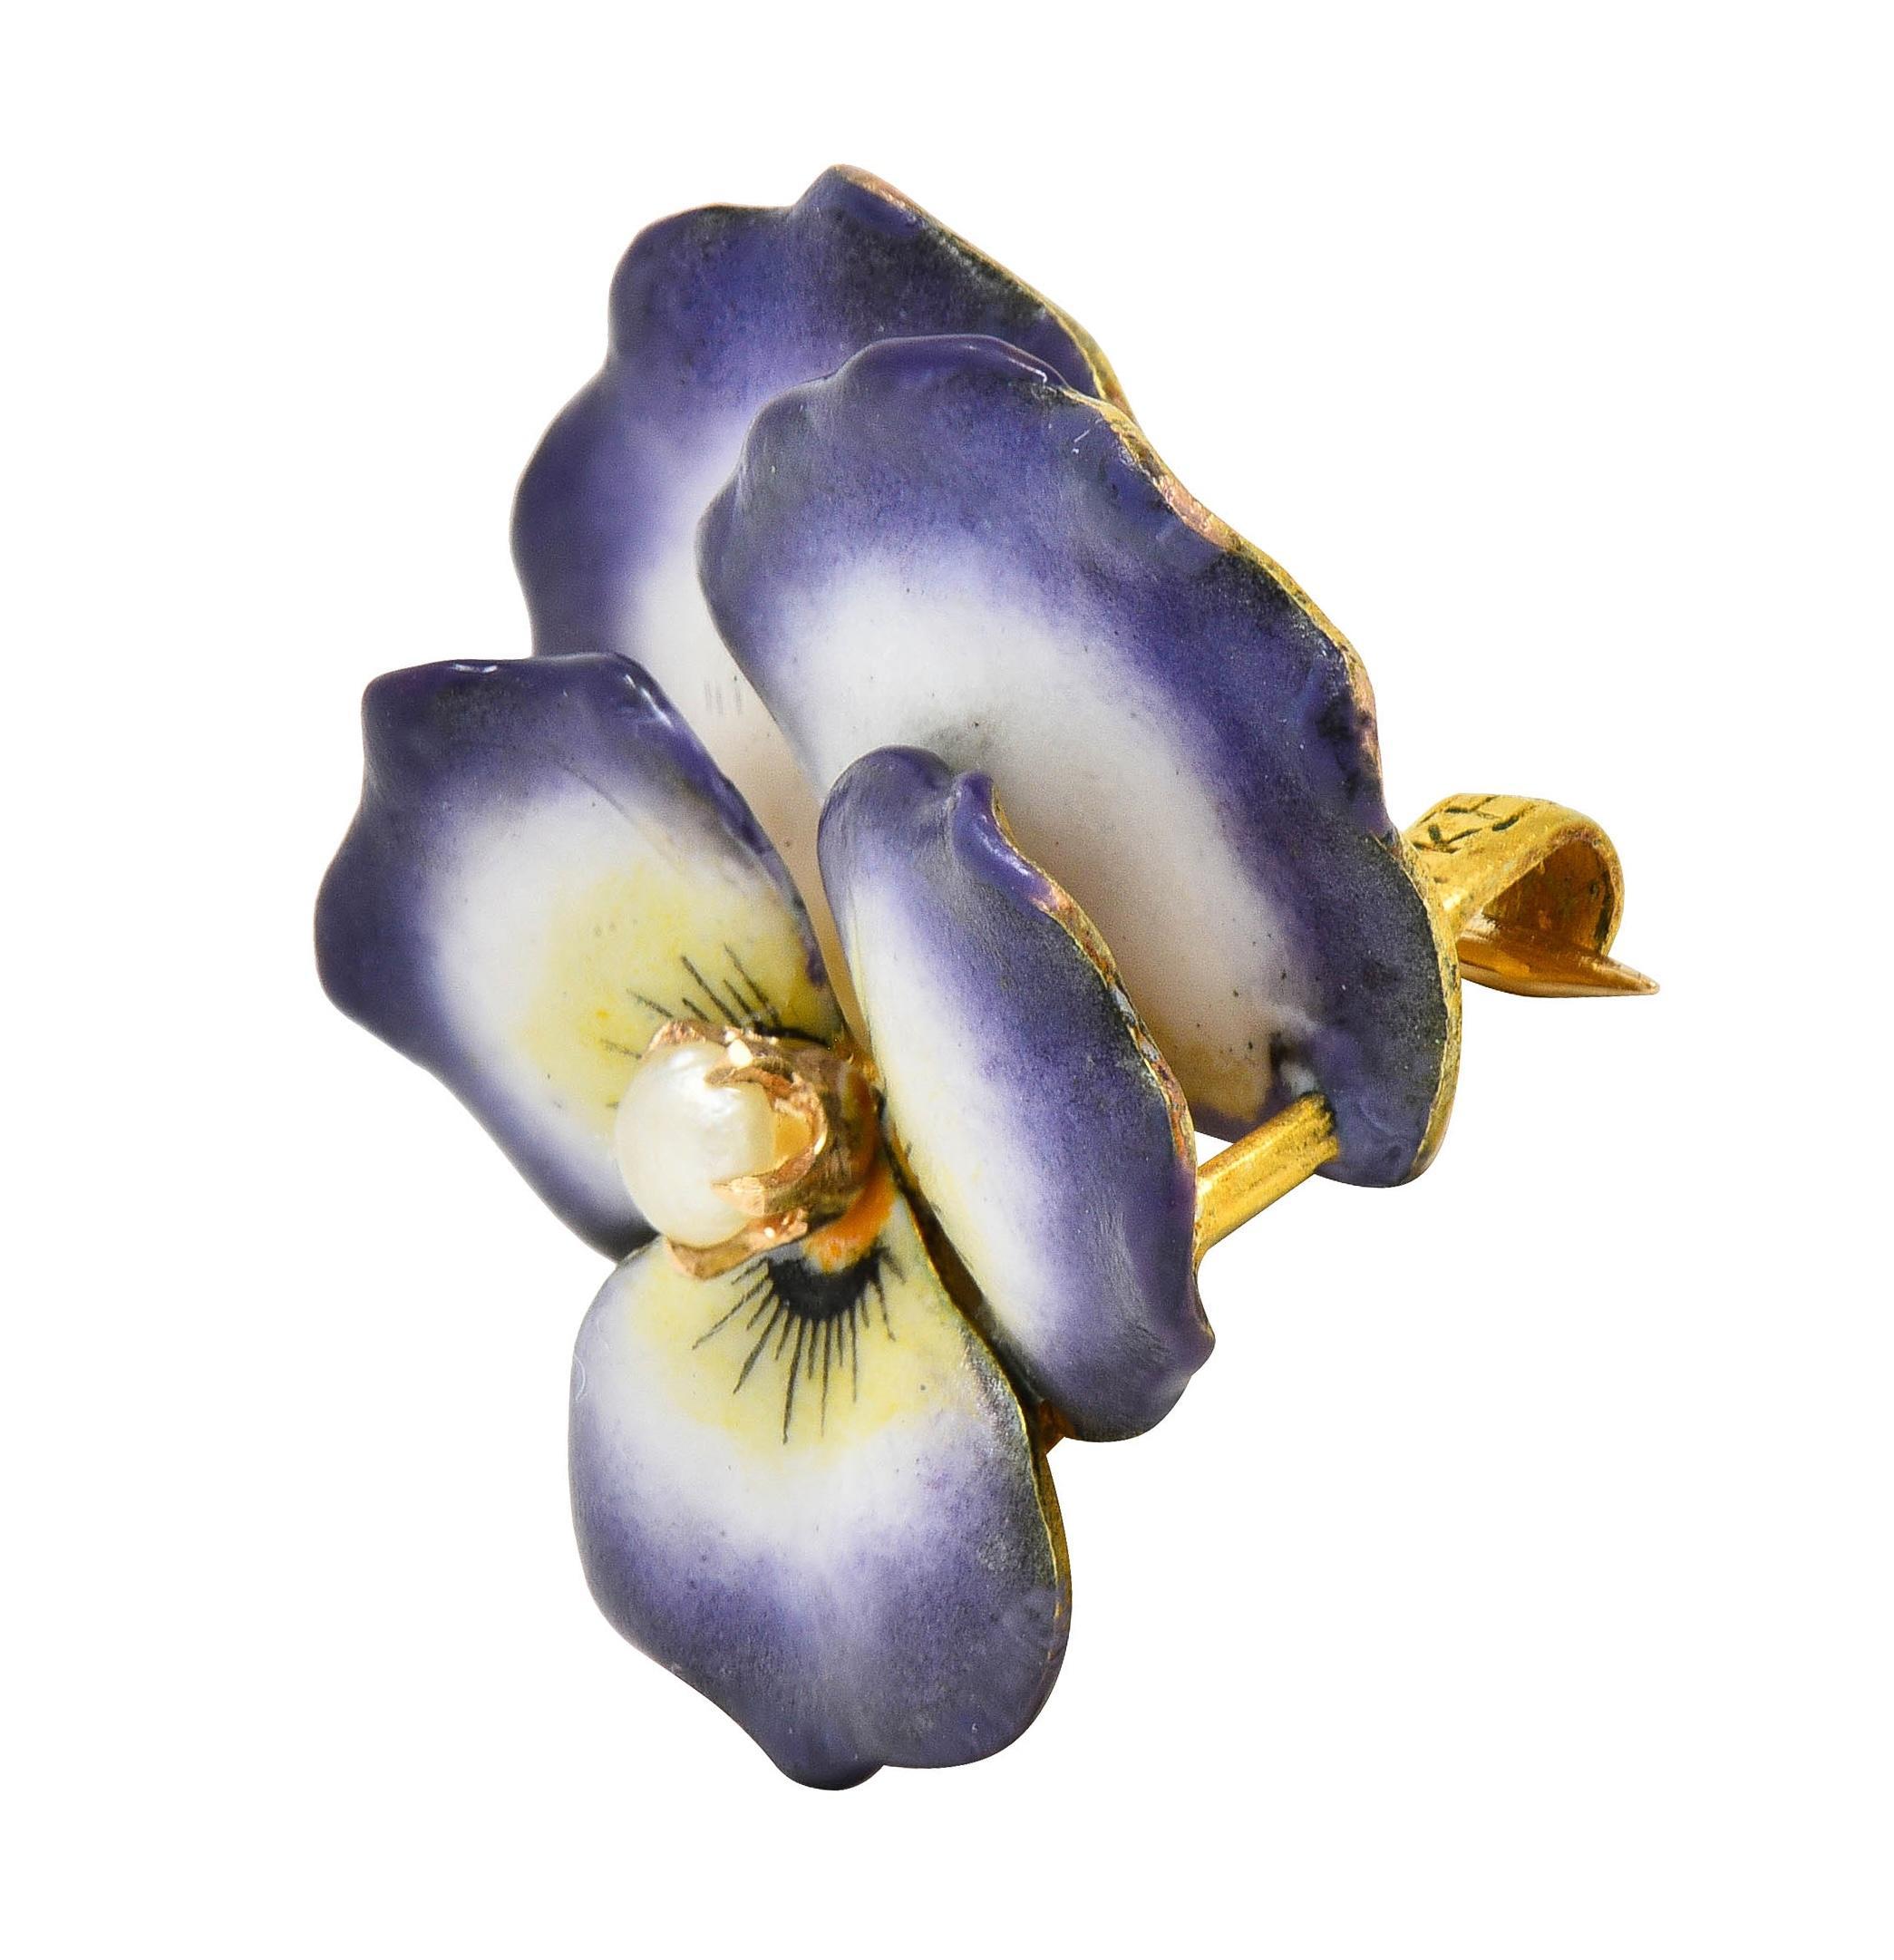 Conçu comme une fleur de pensée dimensionnelle peinte avec de l'émail 
Blanc opaque, jaune et violet avec une perte minime 
Centrage d'une perle bouton quasi-ronde de 3,0 mm
Blanc avec une irisation subtile
Complété par une tige à charnière avec